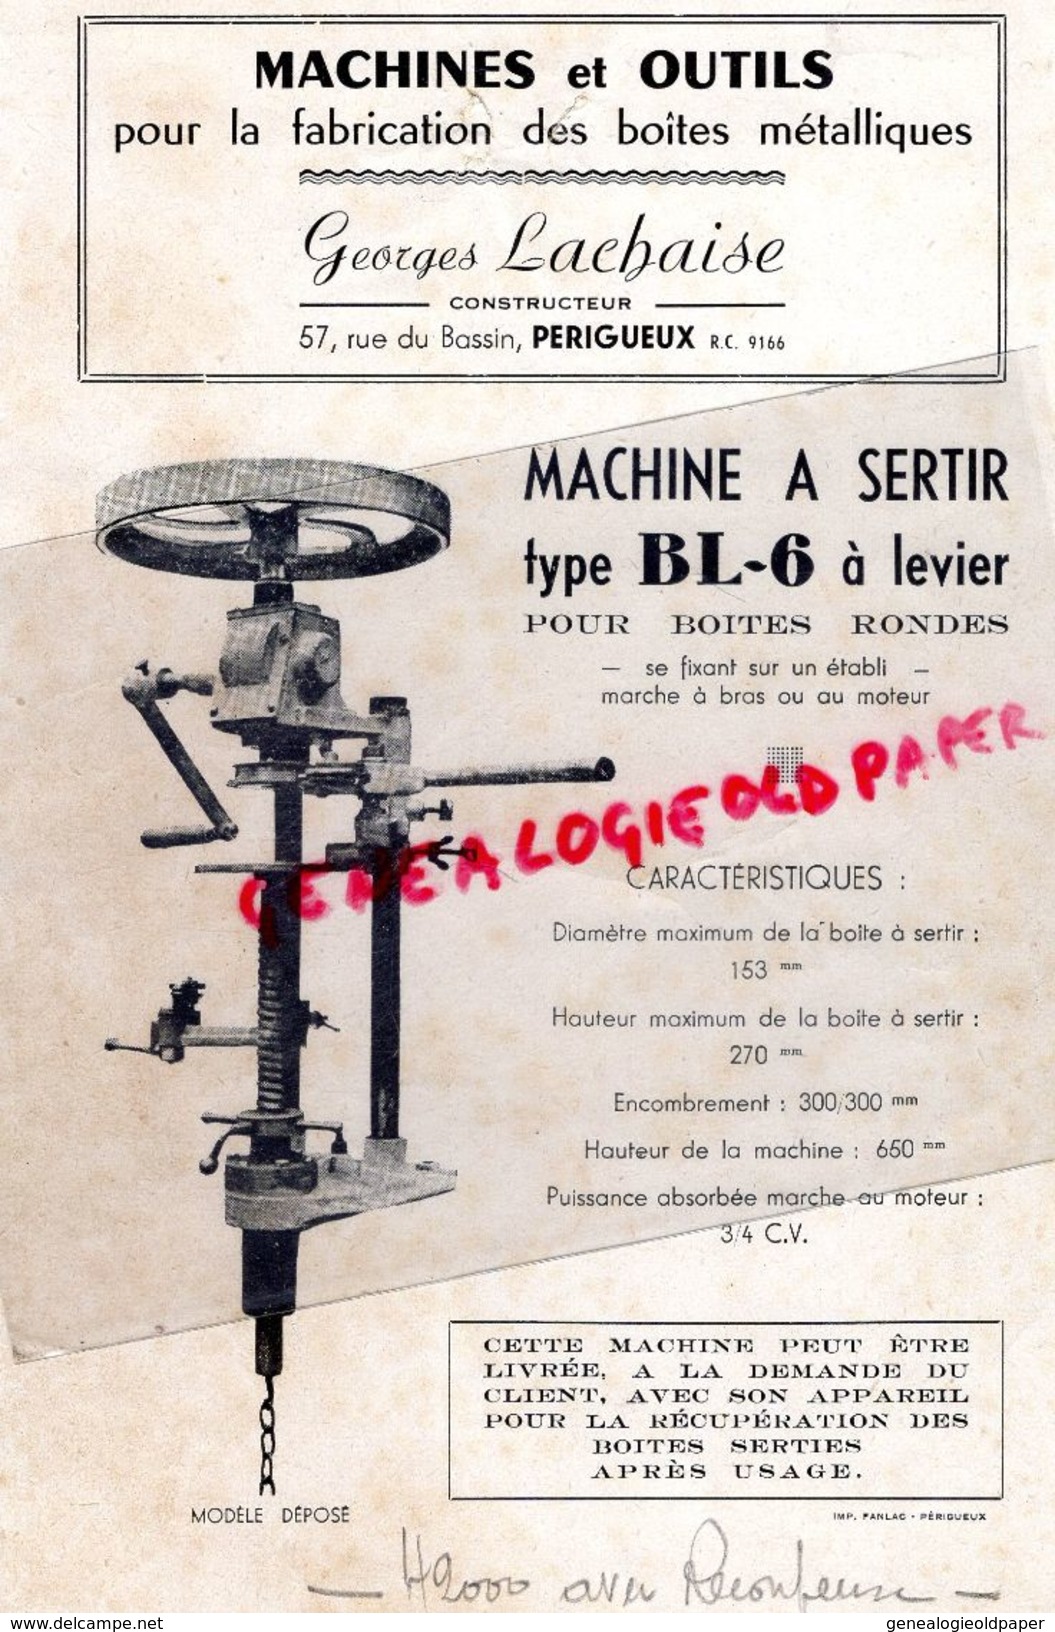 24 -PERIGUEUX- RARE PUBLICITE GEORGES LACHAISE-CONSTRUCTEUR MACHINES ET OUTILS FABRICATION BOITES METALLIQUES-RUE BASSIN - Werbung